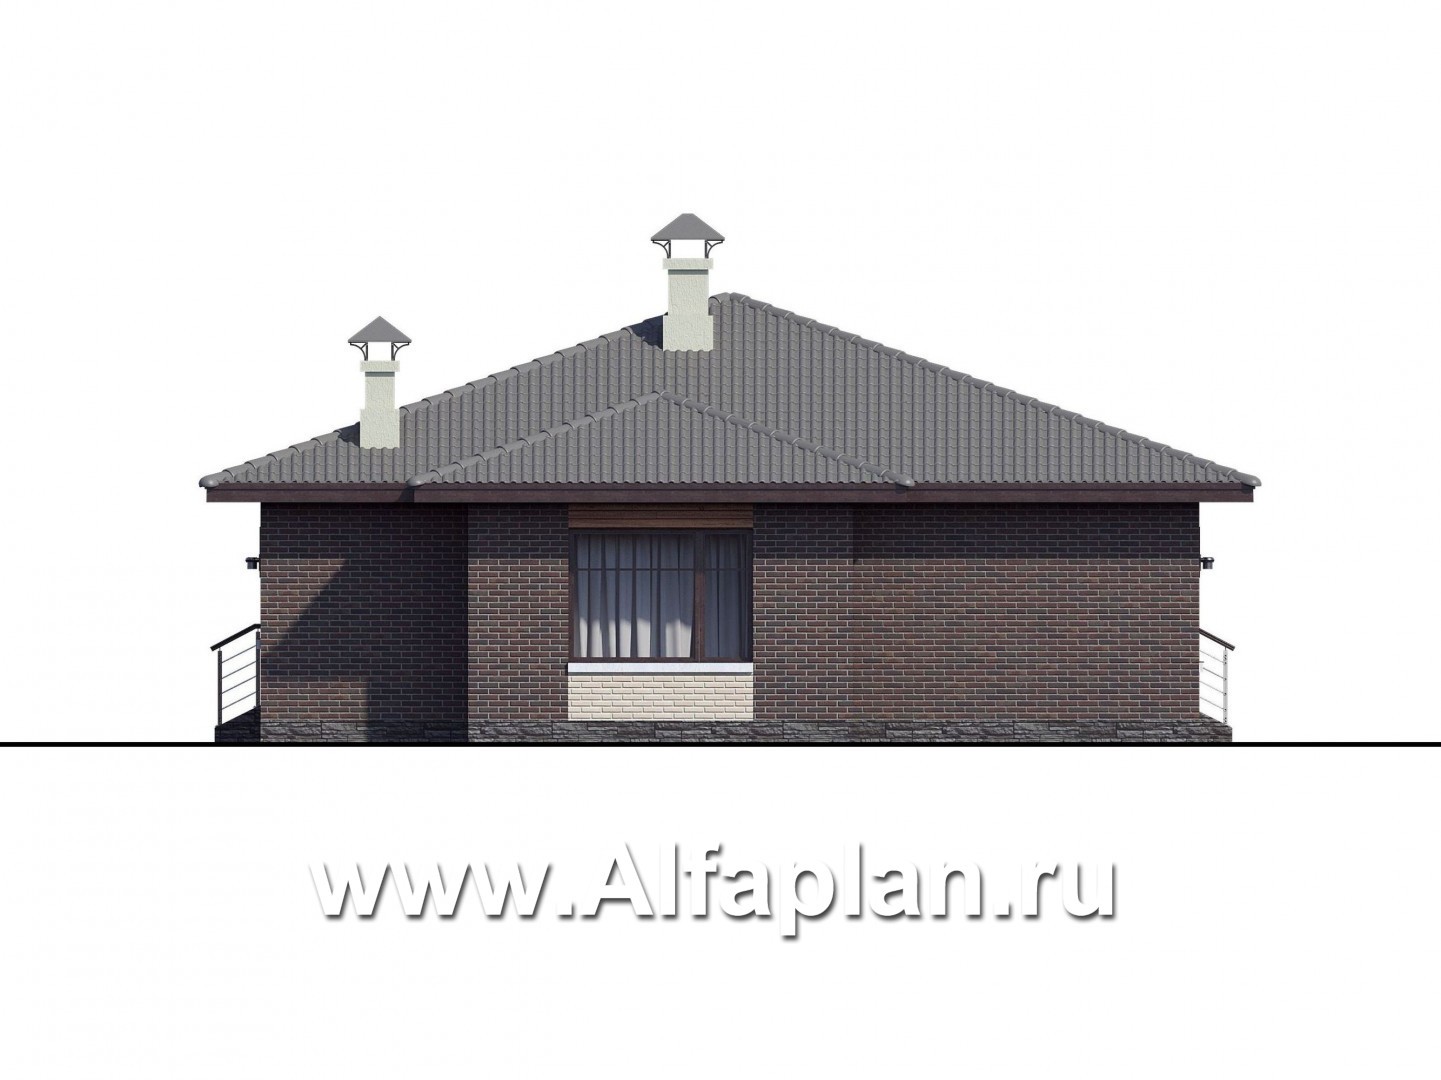 «Волхов» - проект дома 100 кв одноэтажный из кирпича -3 спальни, планировка дома с террасой - фасад дома